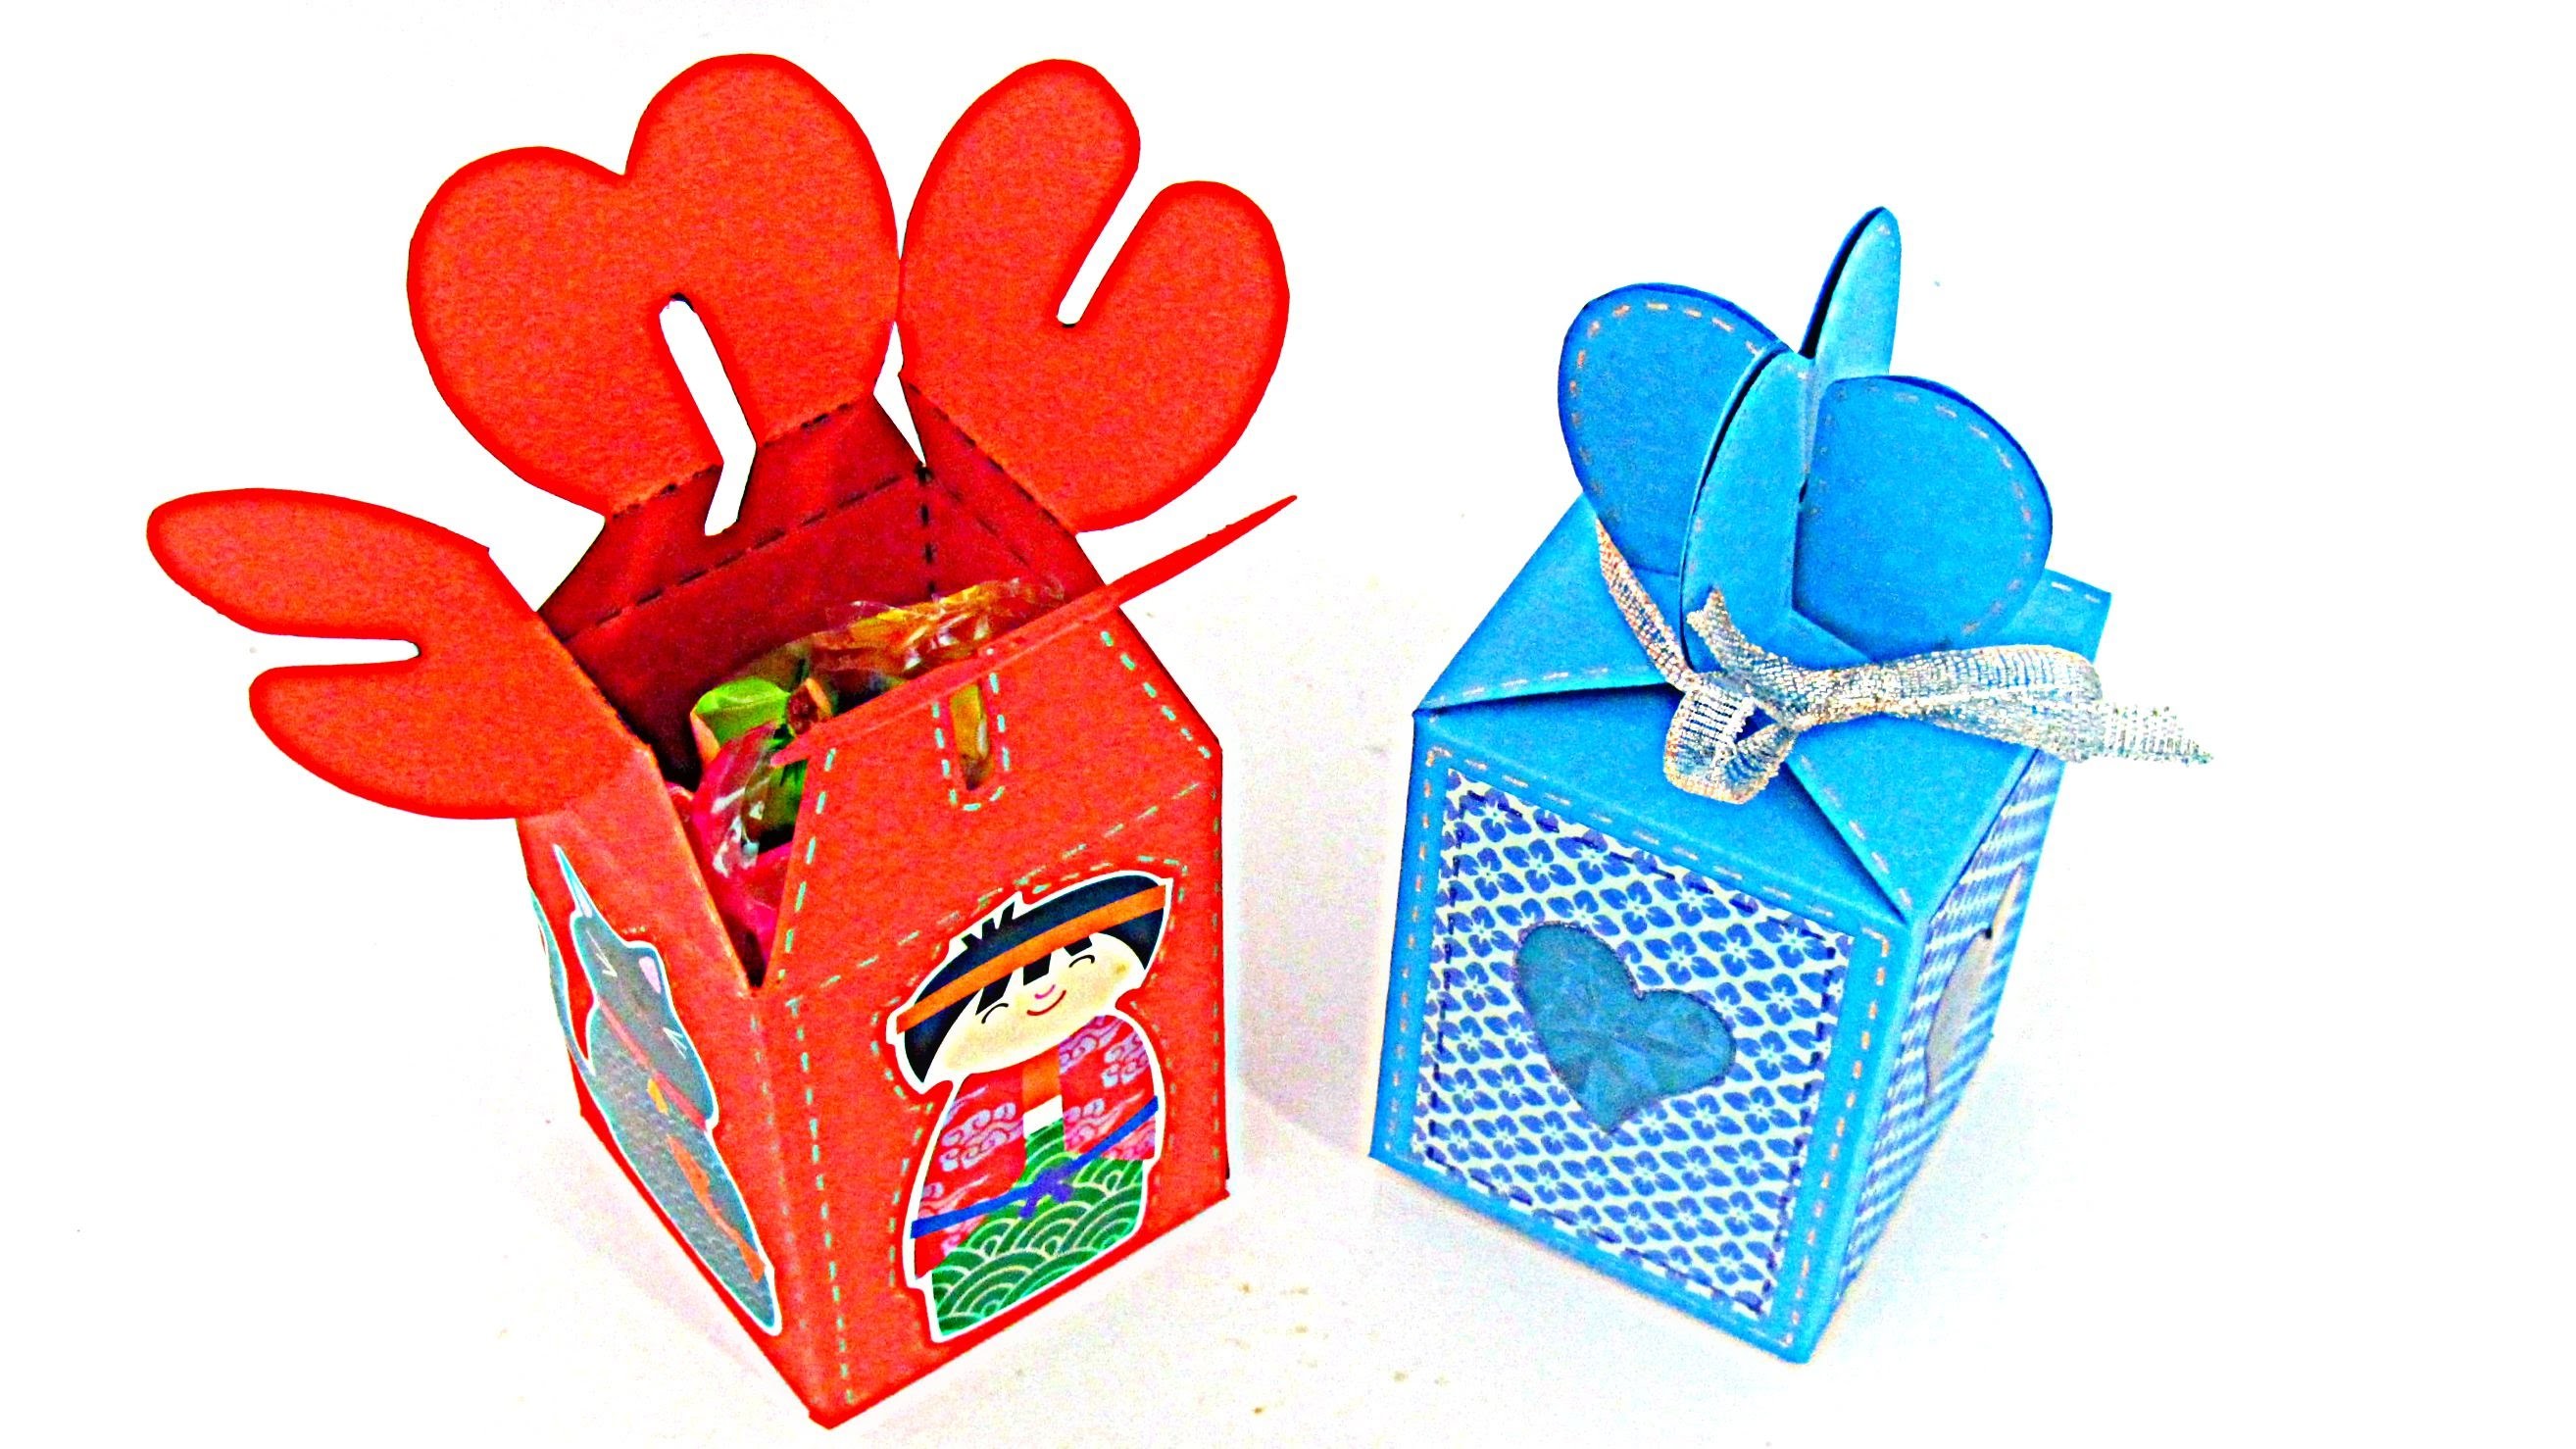 Cómo hacer cajas de regalo. How to make gift boxes.